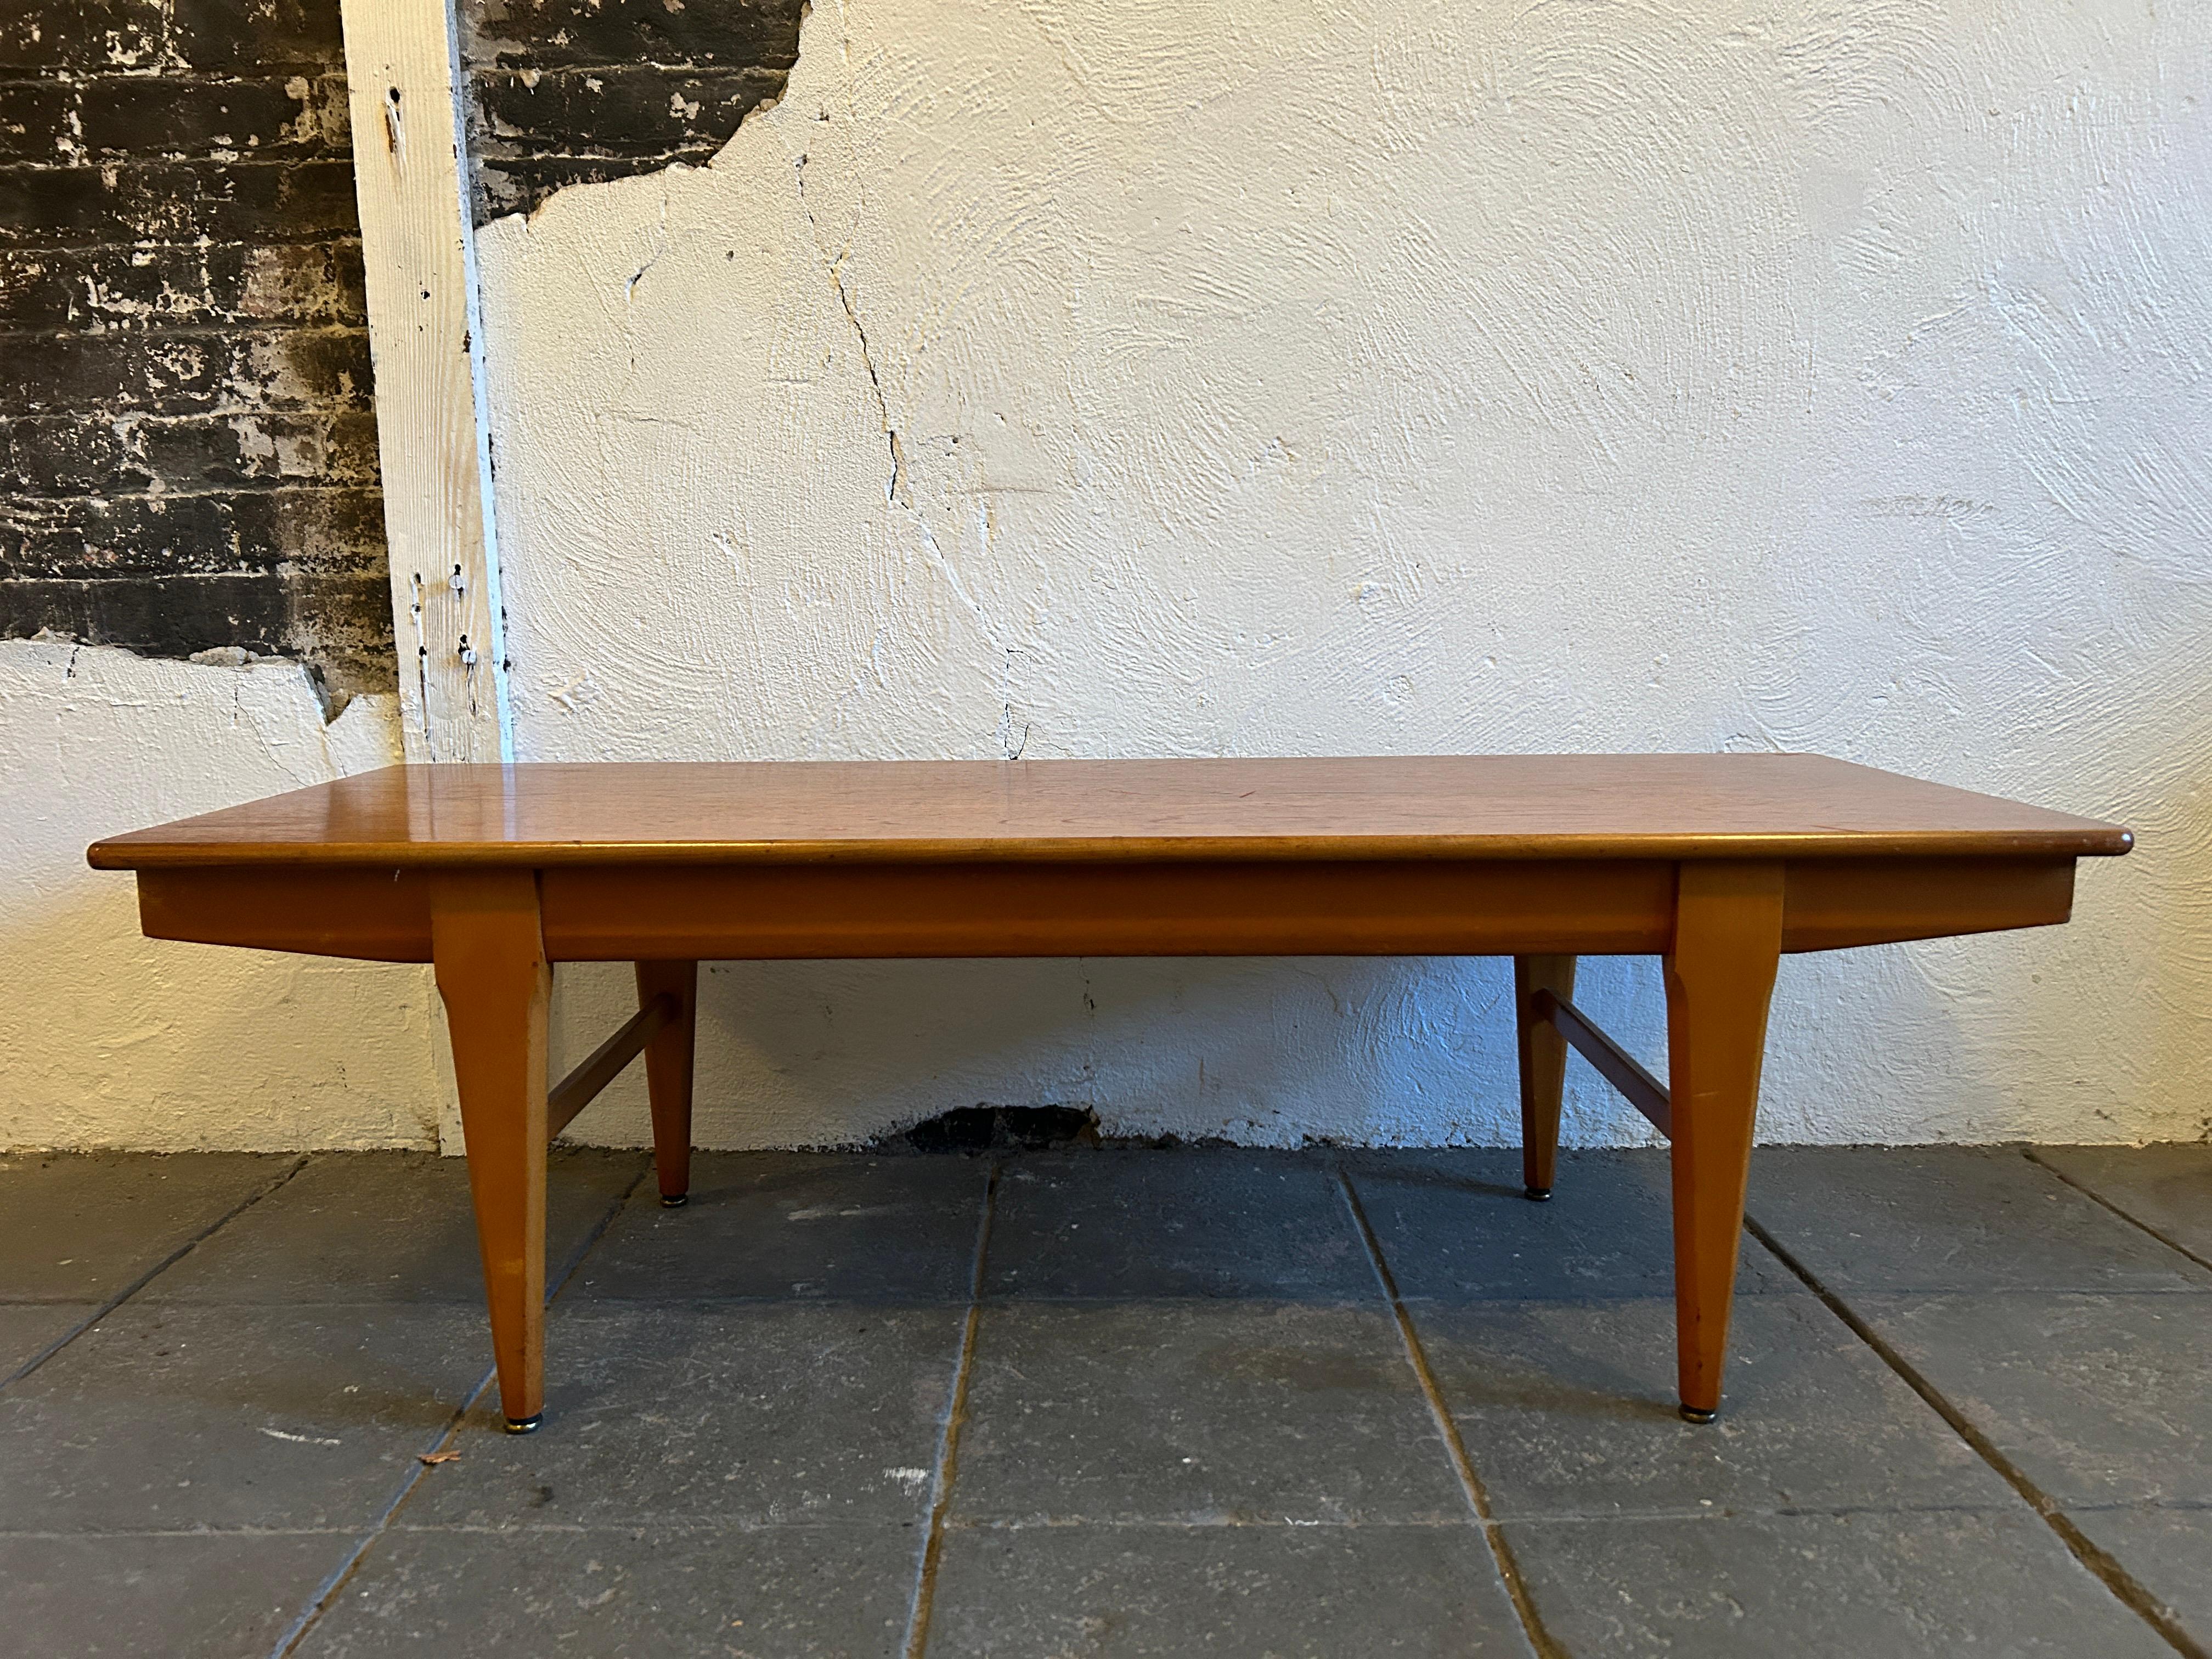 Table basse moderne danoise en teck. Design/One très simple. Bon état vintage. Fabriqué au Danemark. Situé à Brooklyn NYC.

Mesure 48